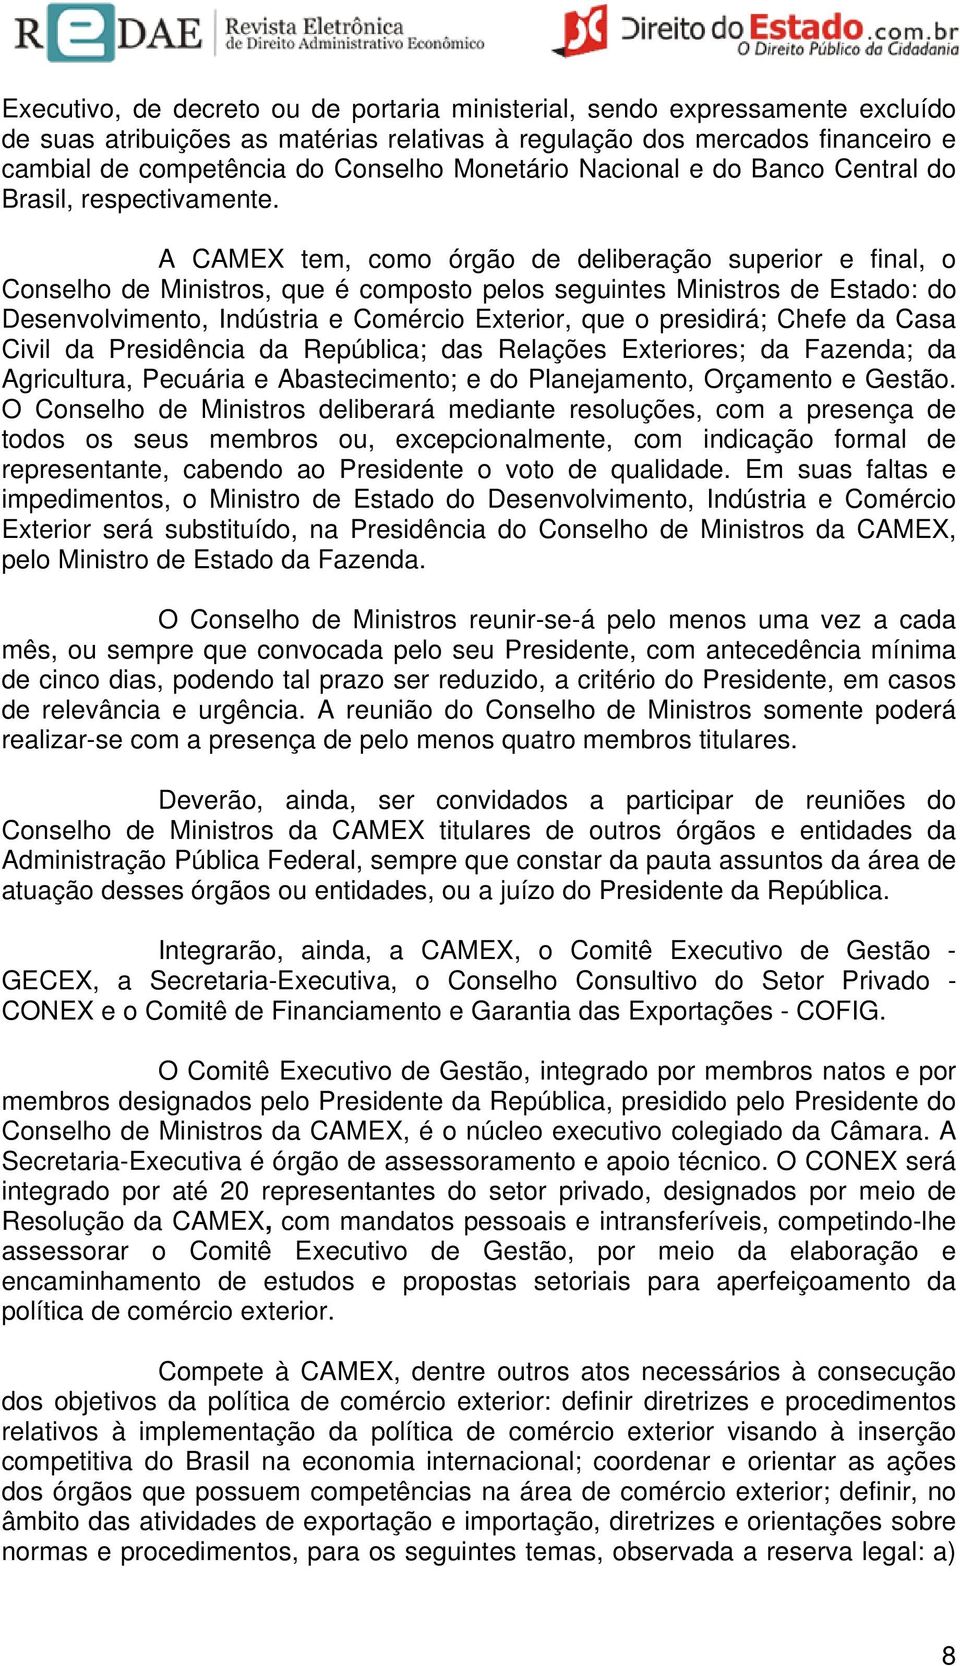 A CAMEX tem, como órgão de deliberação superior e final, o Conselho de Ministros, que é composto pelos seguintes Ministros de Estado: do Desenvolvimento, Indústria e Comércio Exterior, que o